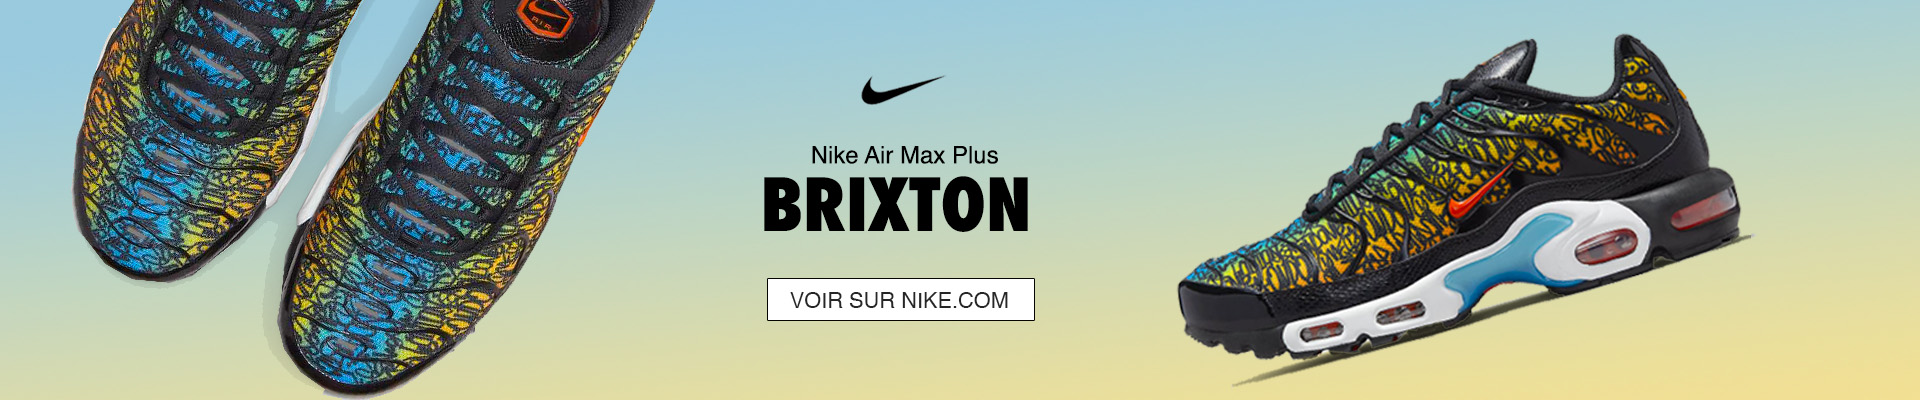 Nike Air Max Plus Brixton